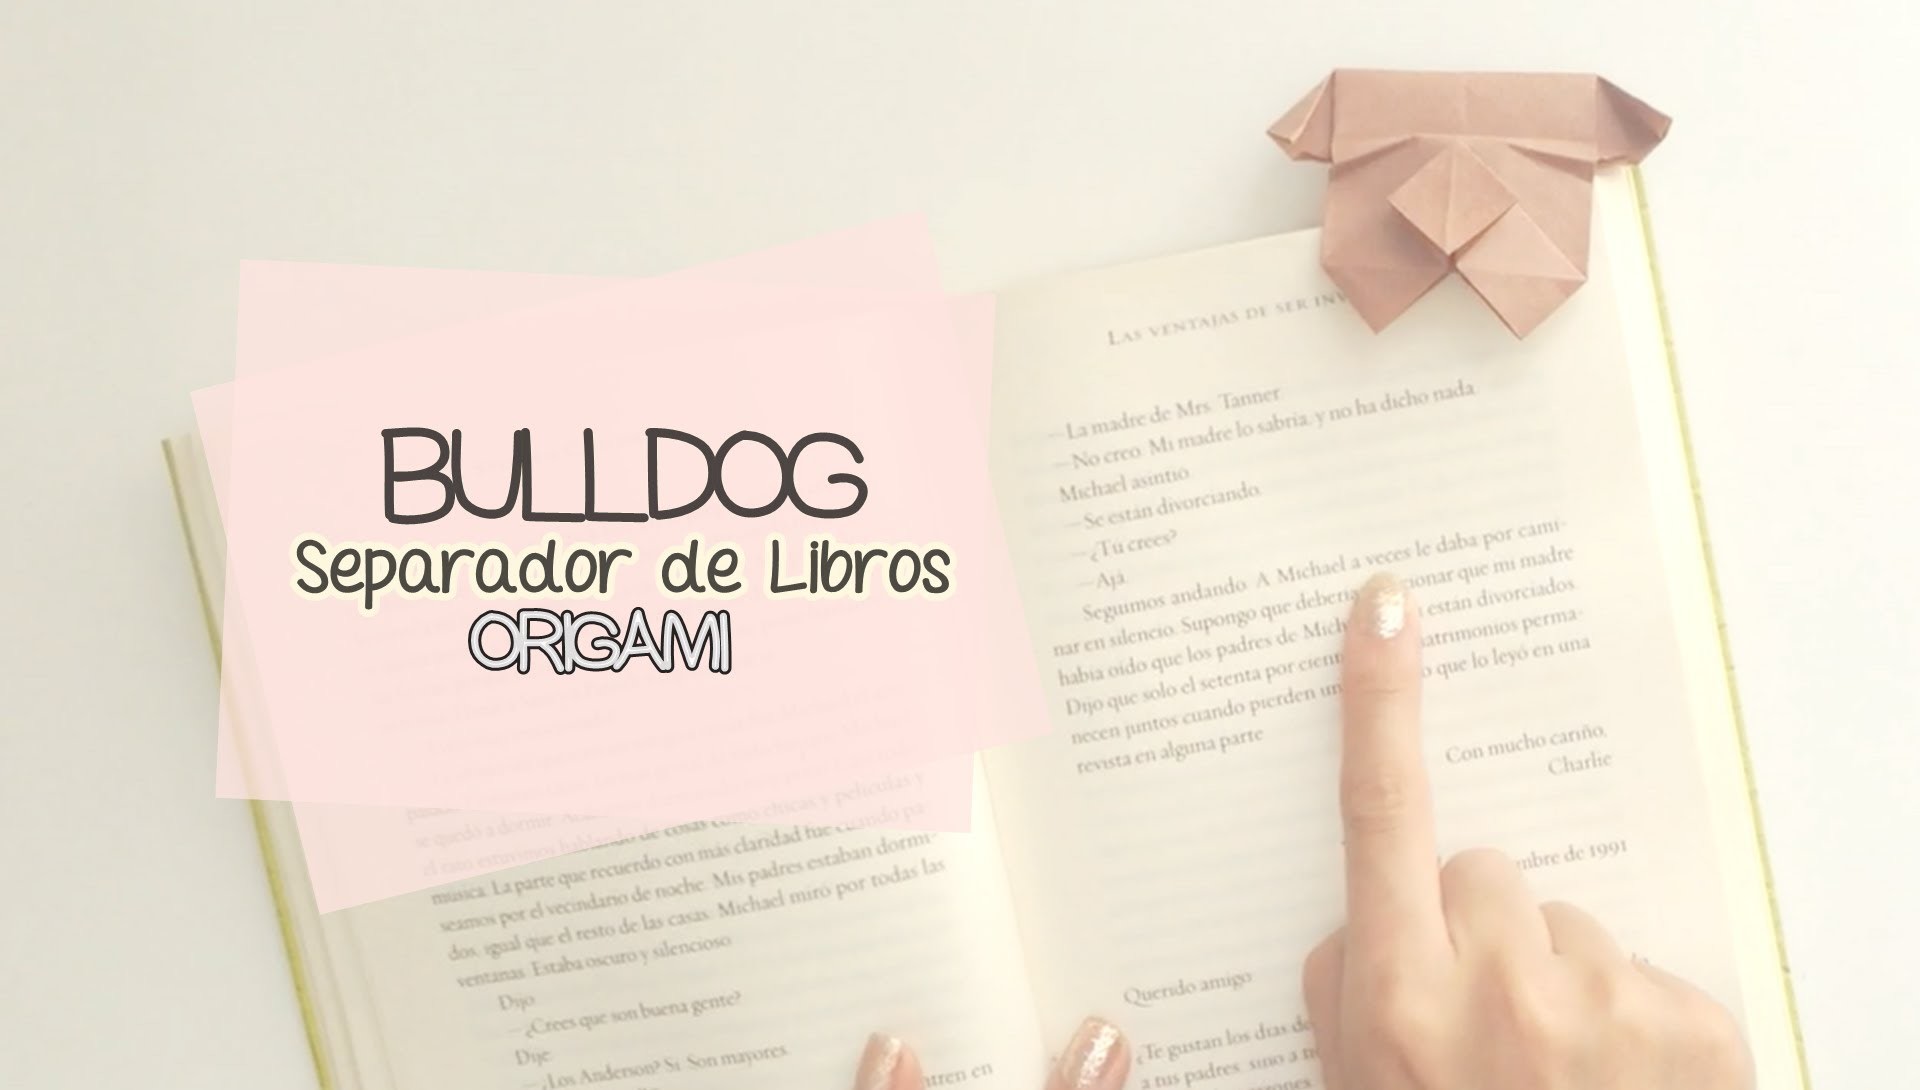 SEPARADOR DE LIBROS "BULLDOG" ORIGAMI (fácil) ♥